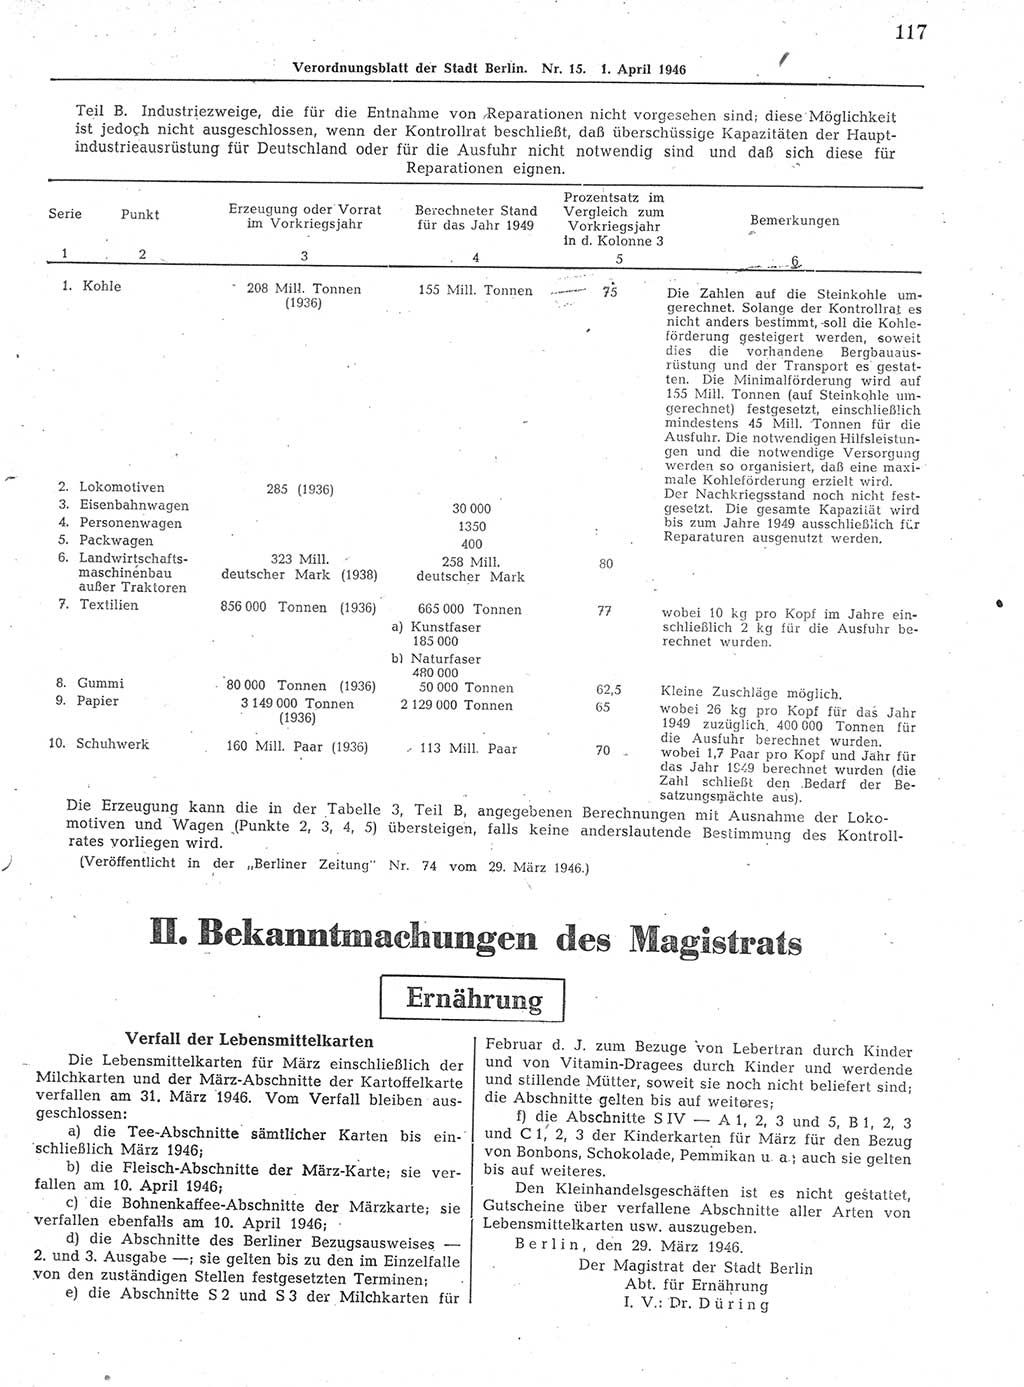 Verordnungsblatt (VOBl.) der Stadt Berlin, für Groß-Berlin 1946, Seite 117 (VOBl. Bln. 1946, S. 117)